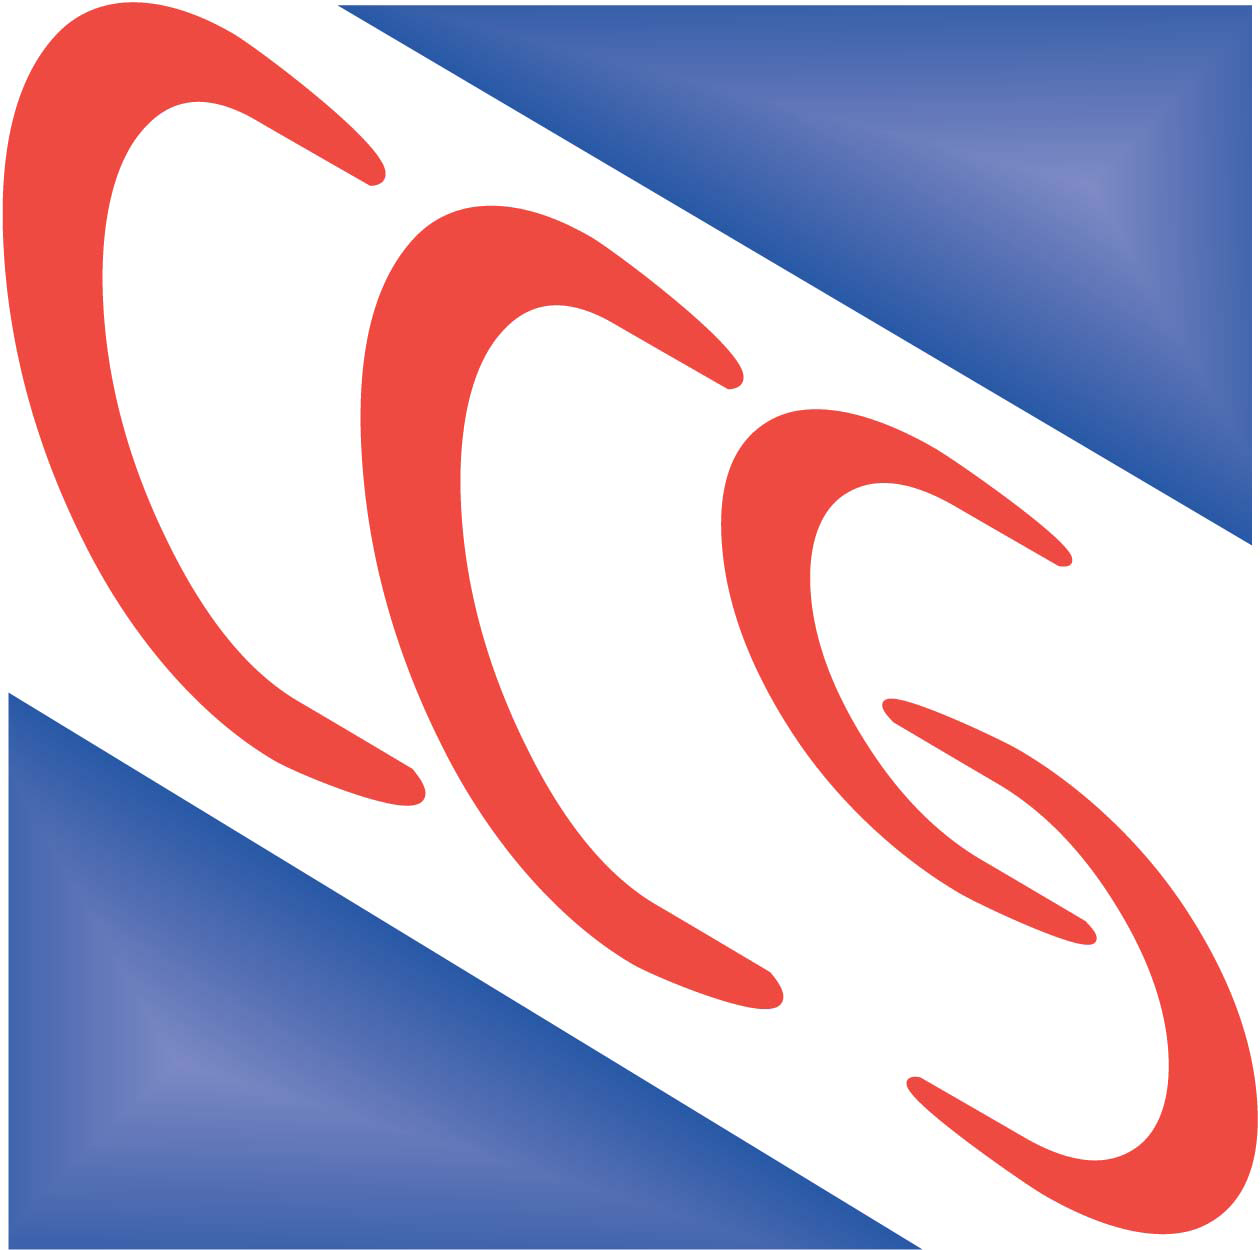 logo_ccs